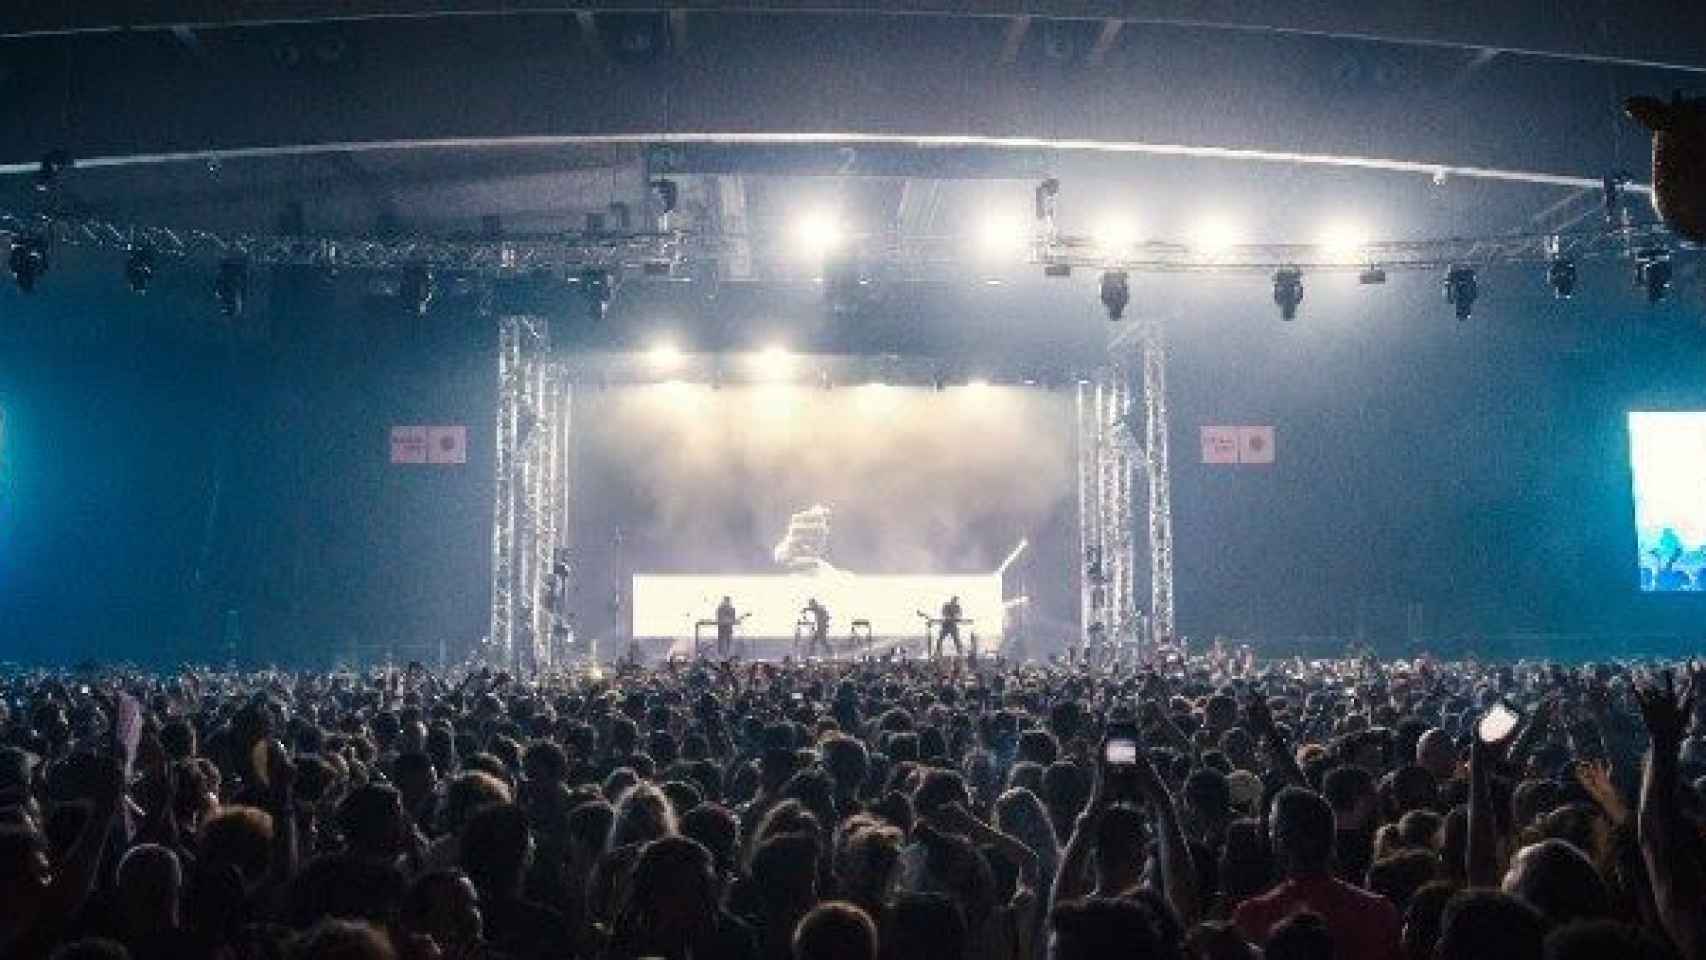 Imagen de un concierto de la noche del viernes en el festival Sónar / CG